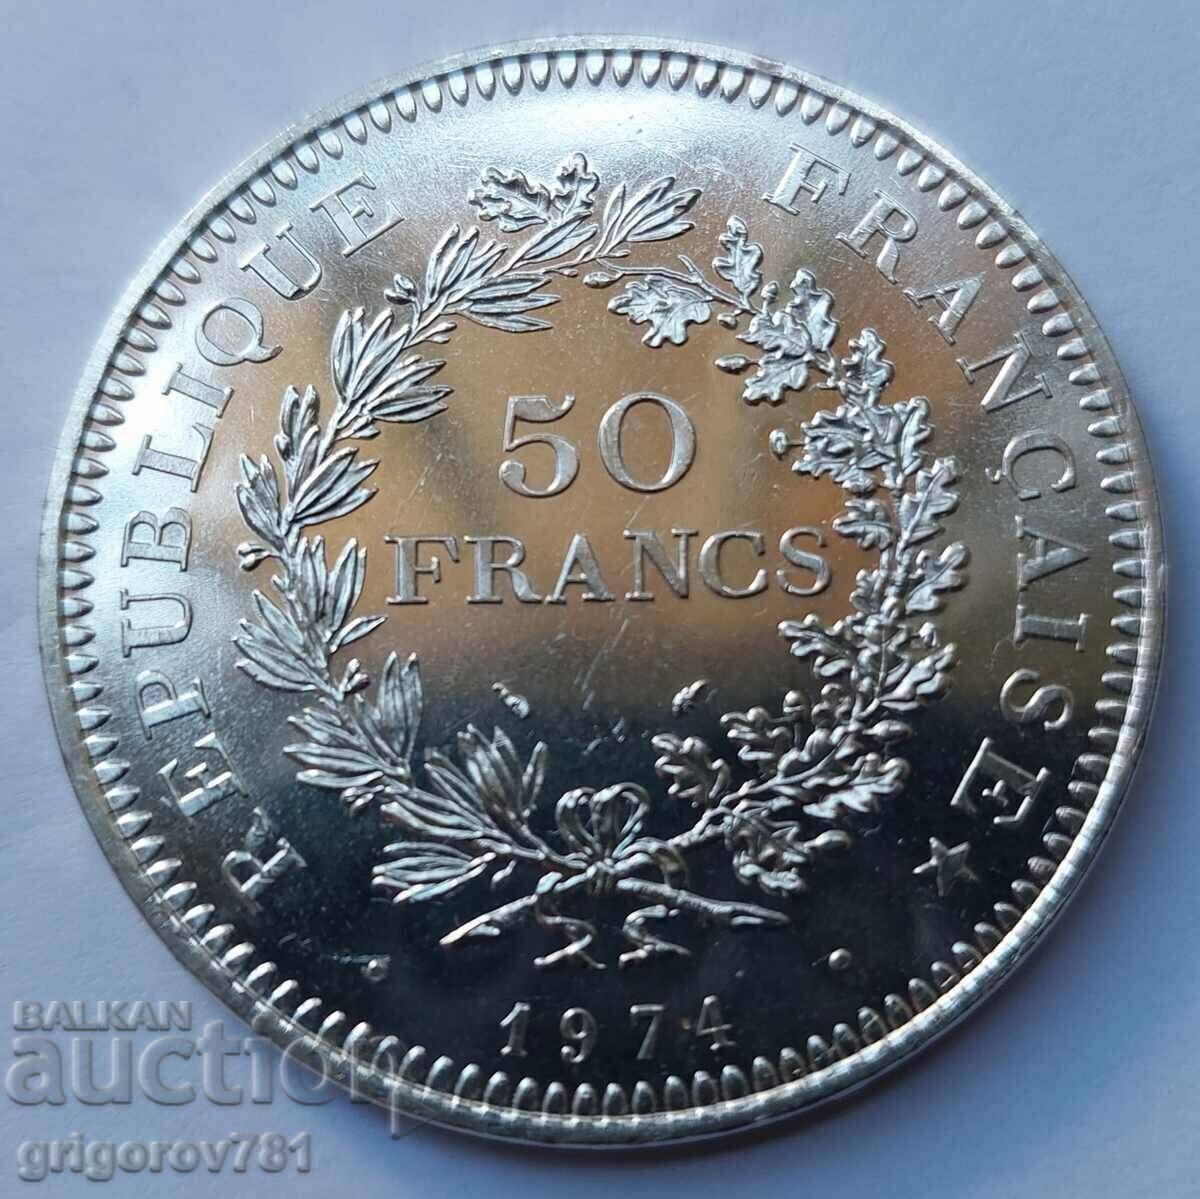 Ασήμι 50 φράγκων Γαλλία 1974 - Ασημένιο νόμισμα #17